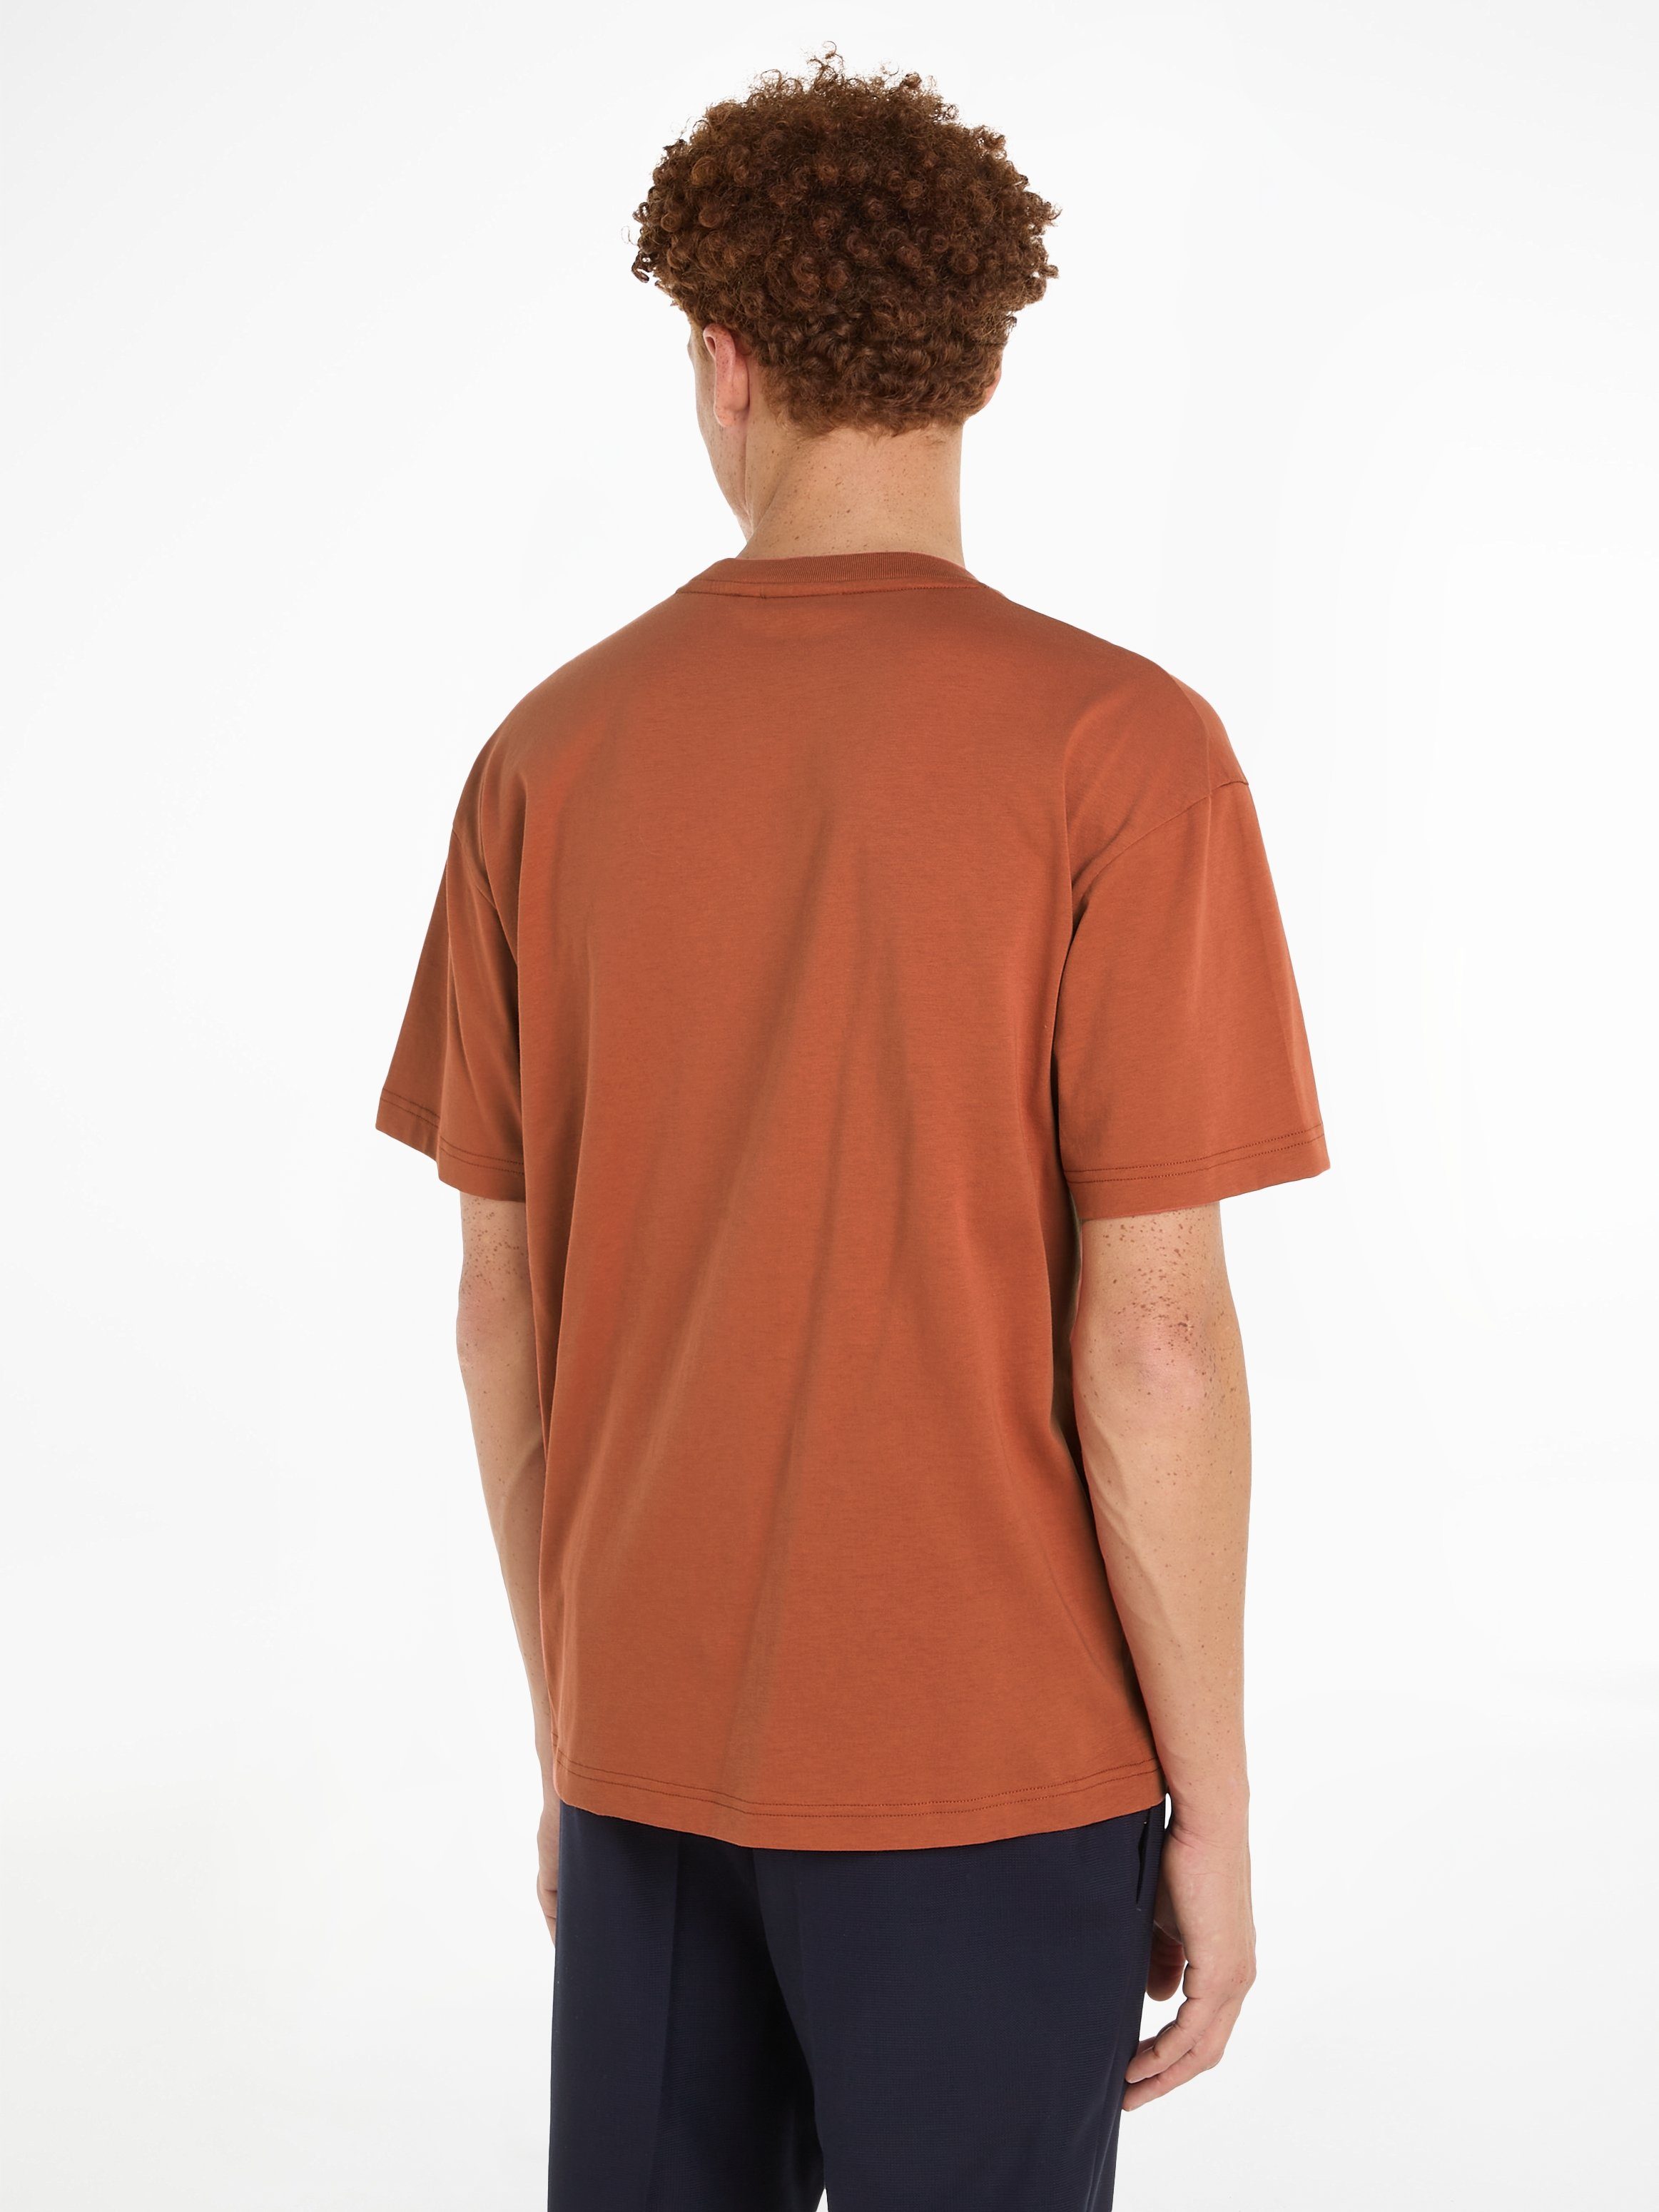 Calvin Klein T-Shirt LOGO Sun Copper HERO Markenlabel aufgedrucktem mit T-SHIRT COMFORT